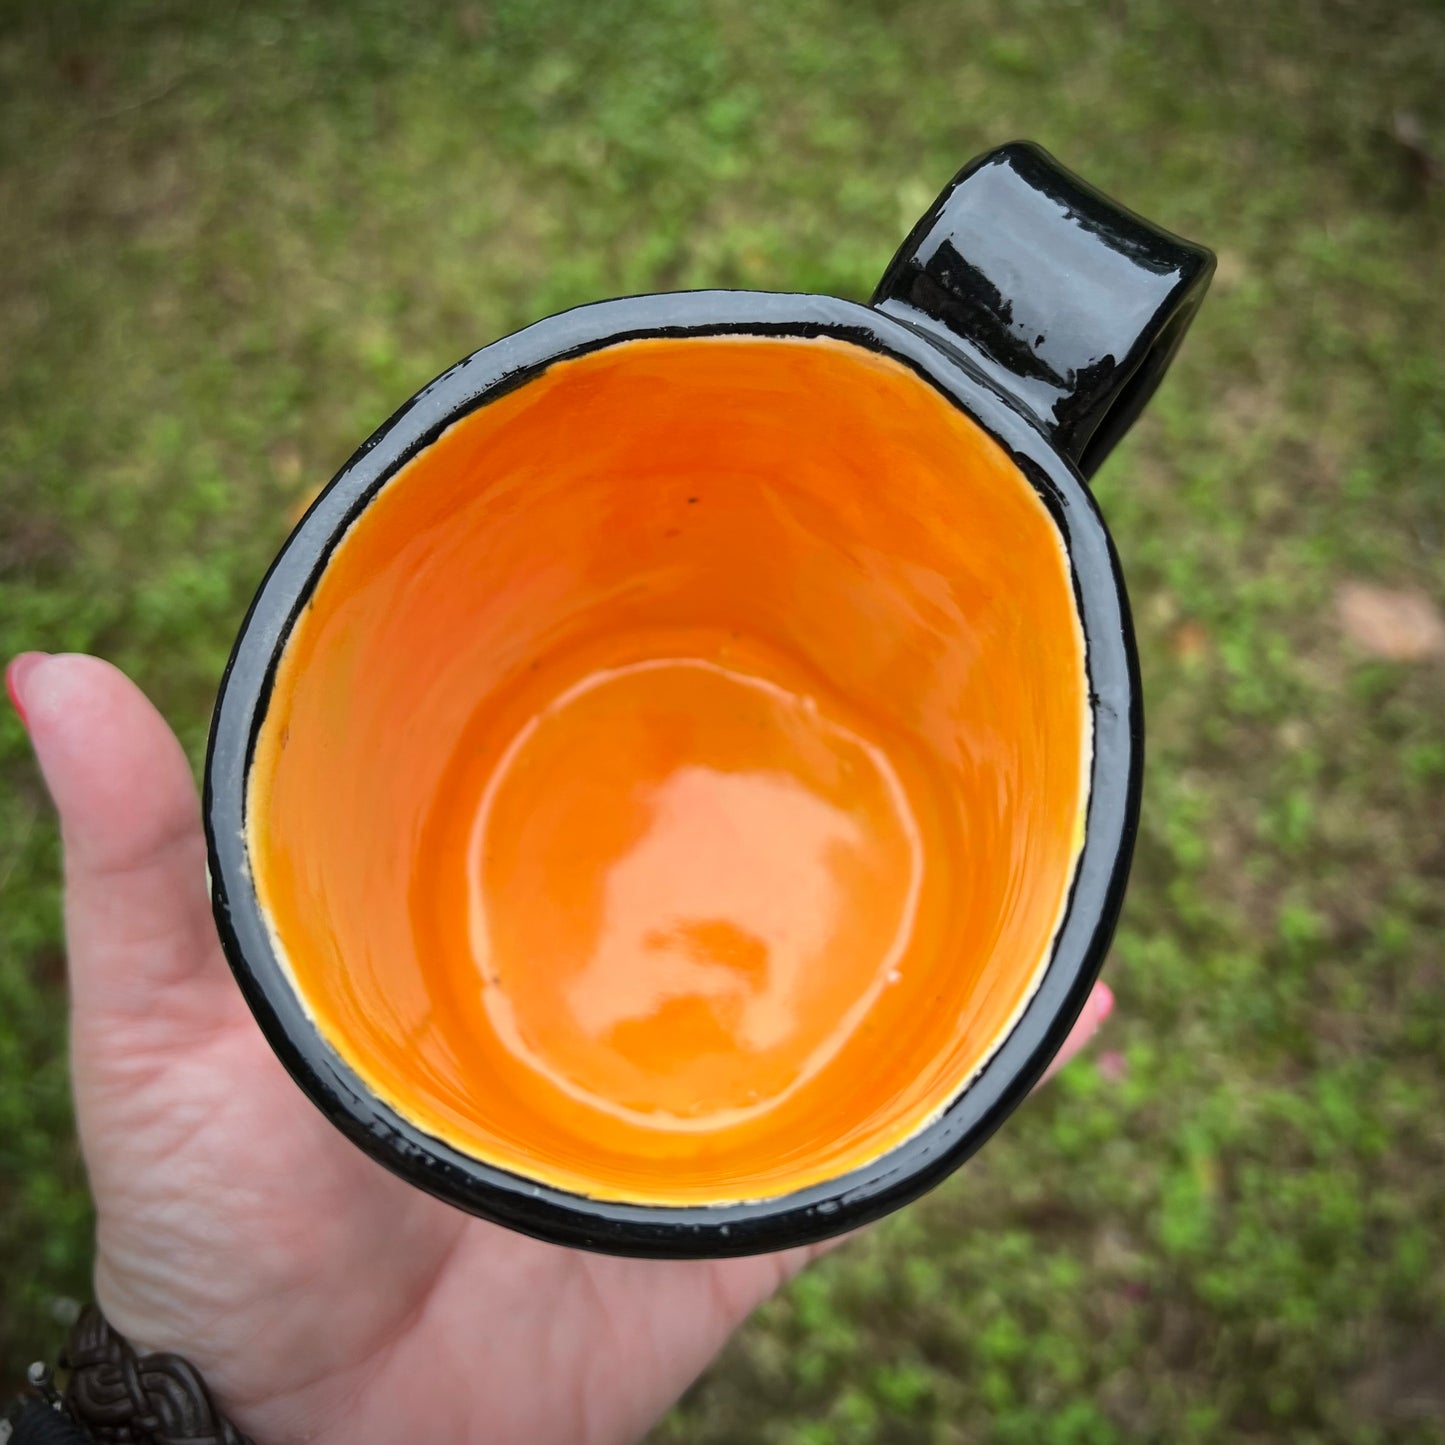 Shine Your Weird Ceramic Mug